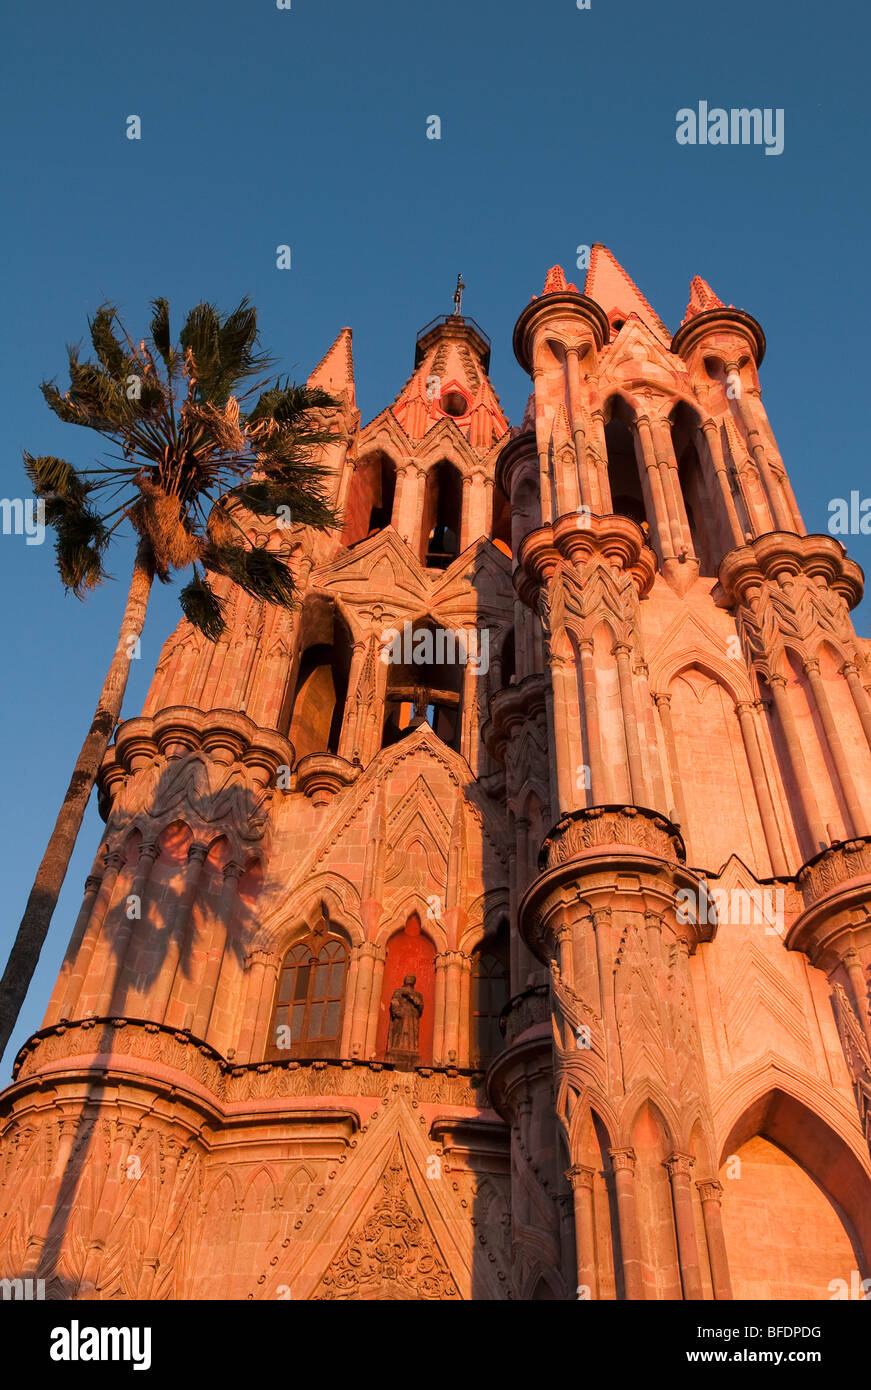 La Parroquia, la célèbre église paroissiale de San Miguel de Allende, Guanajuato, Mexique. Banque D'Images